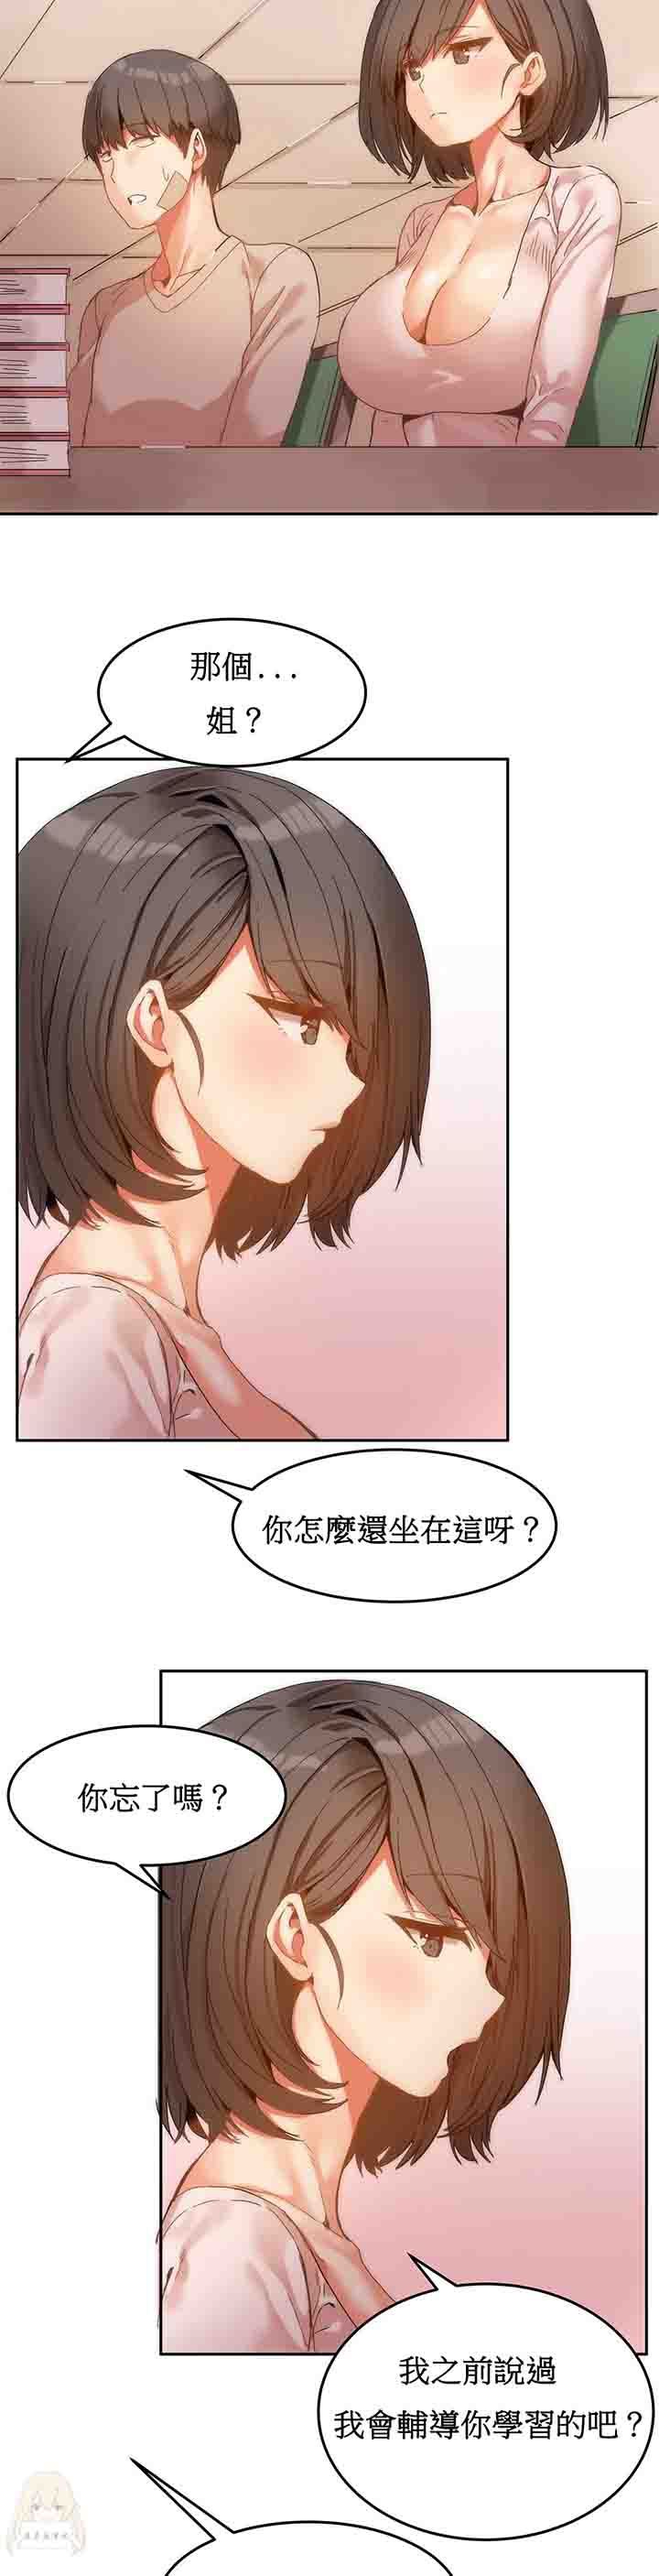 韩国污漫画 寄宿公寓-陰氣之洞 第6话 8